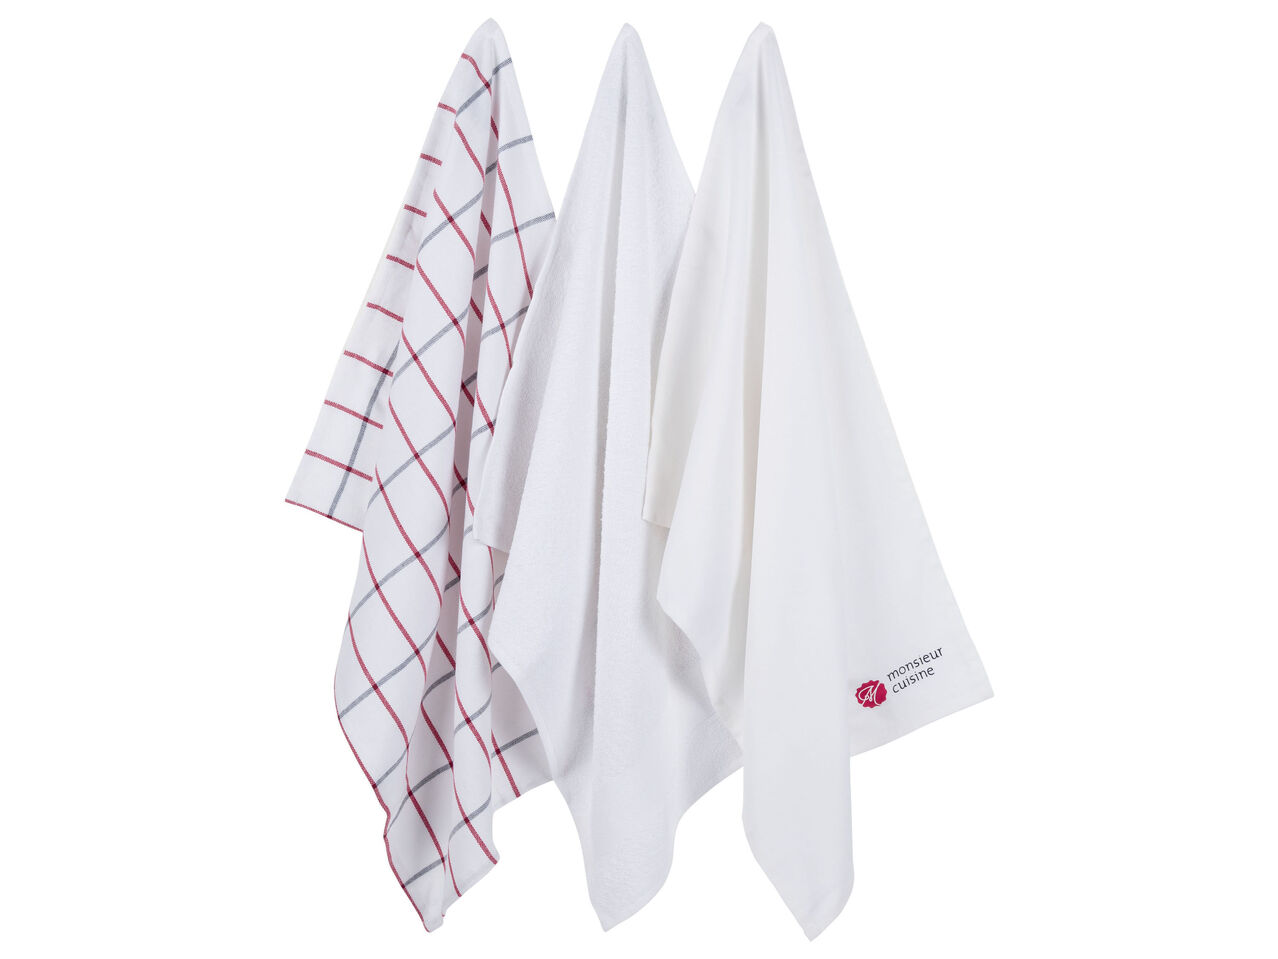 MERADISO® Ręczniki kuchenne 50 x 70 cm, 3 szt.*** , cena 7,99 PLN 
MERADISO® Ręczniki ...